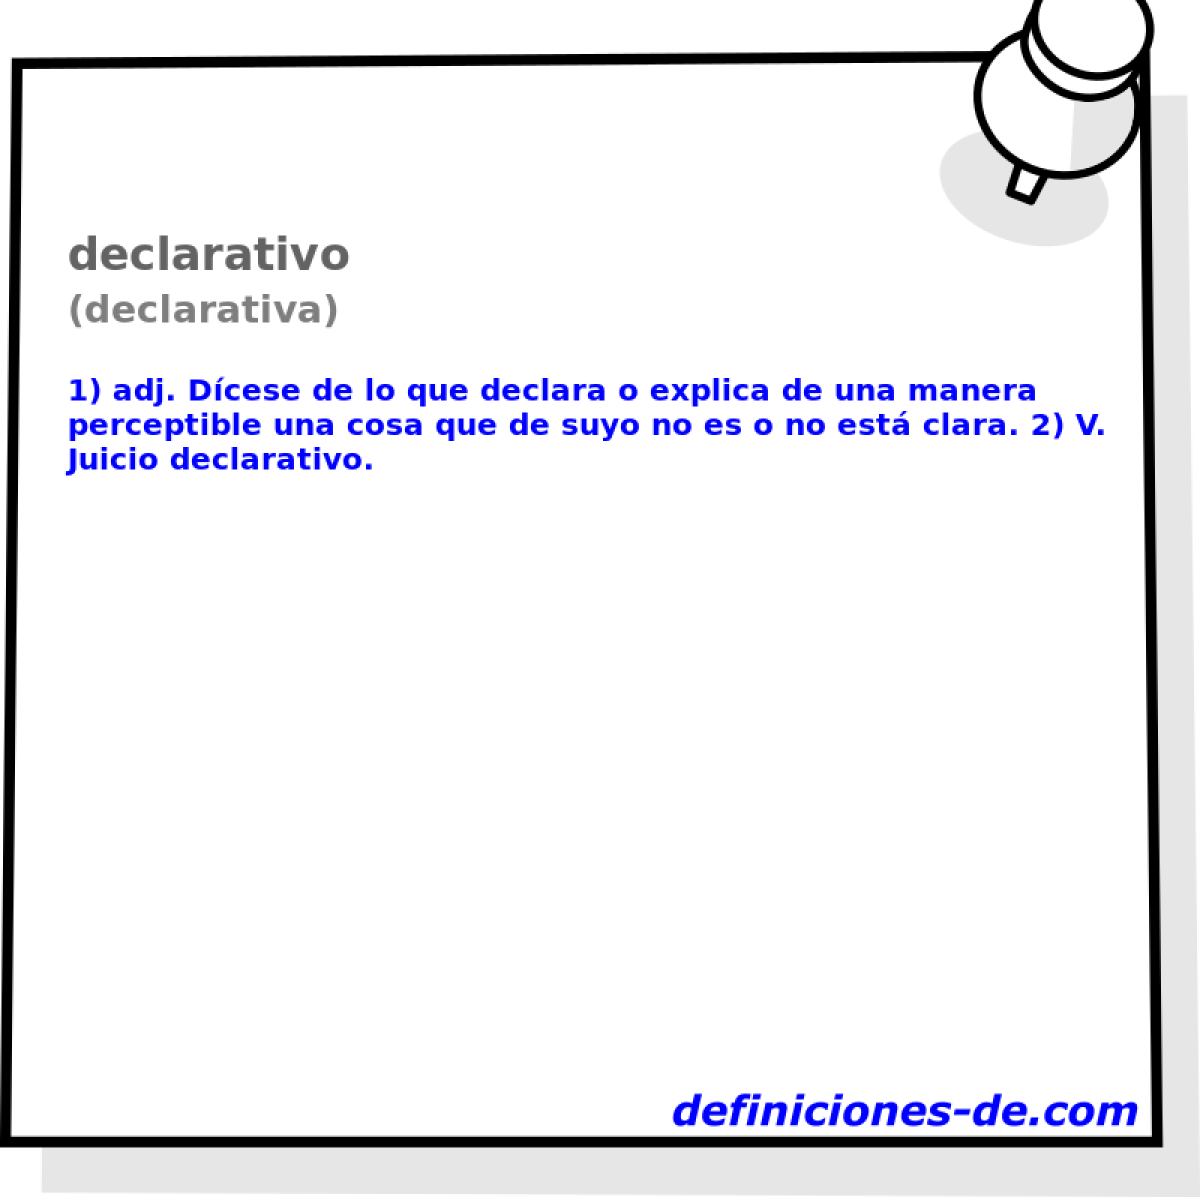 declarativo (declarativa)